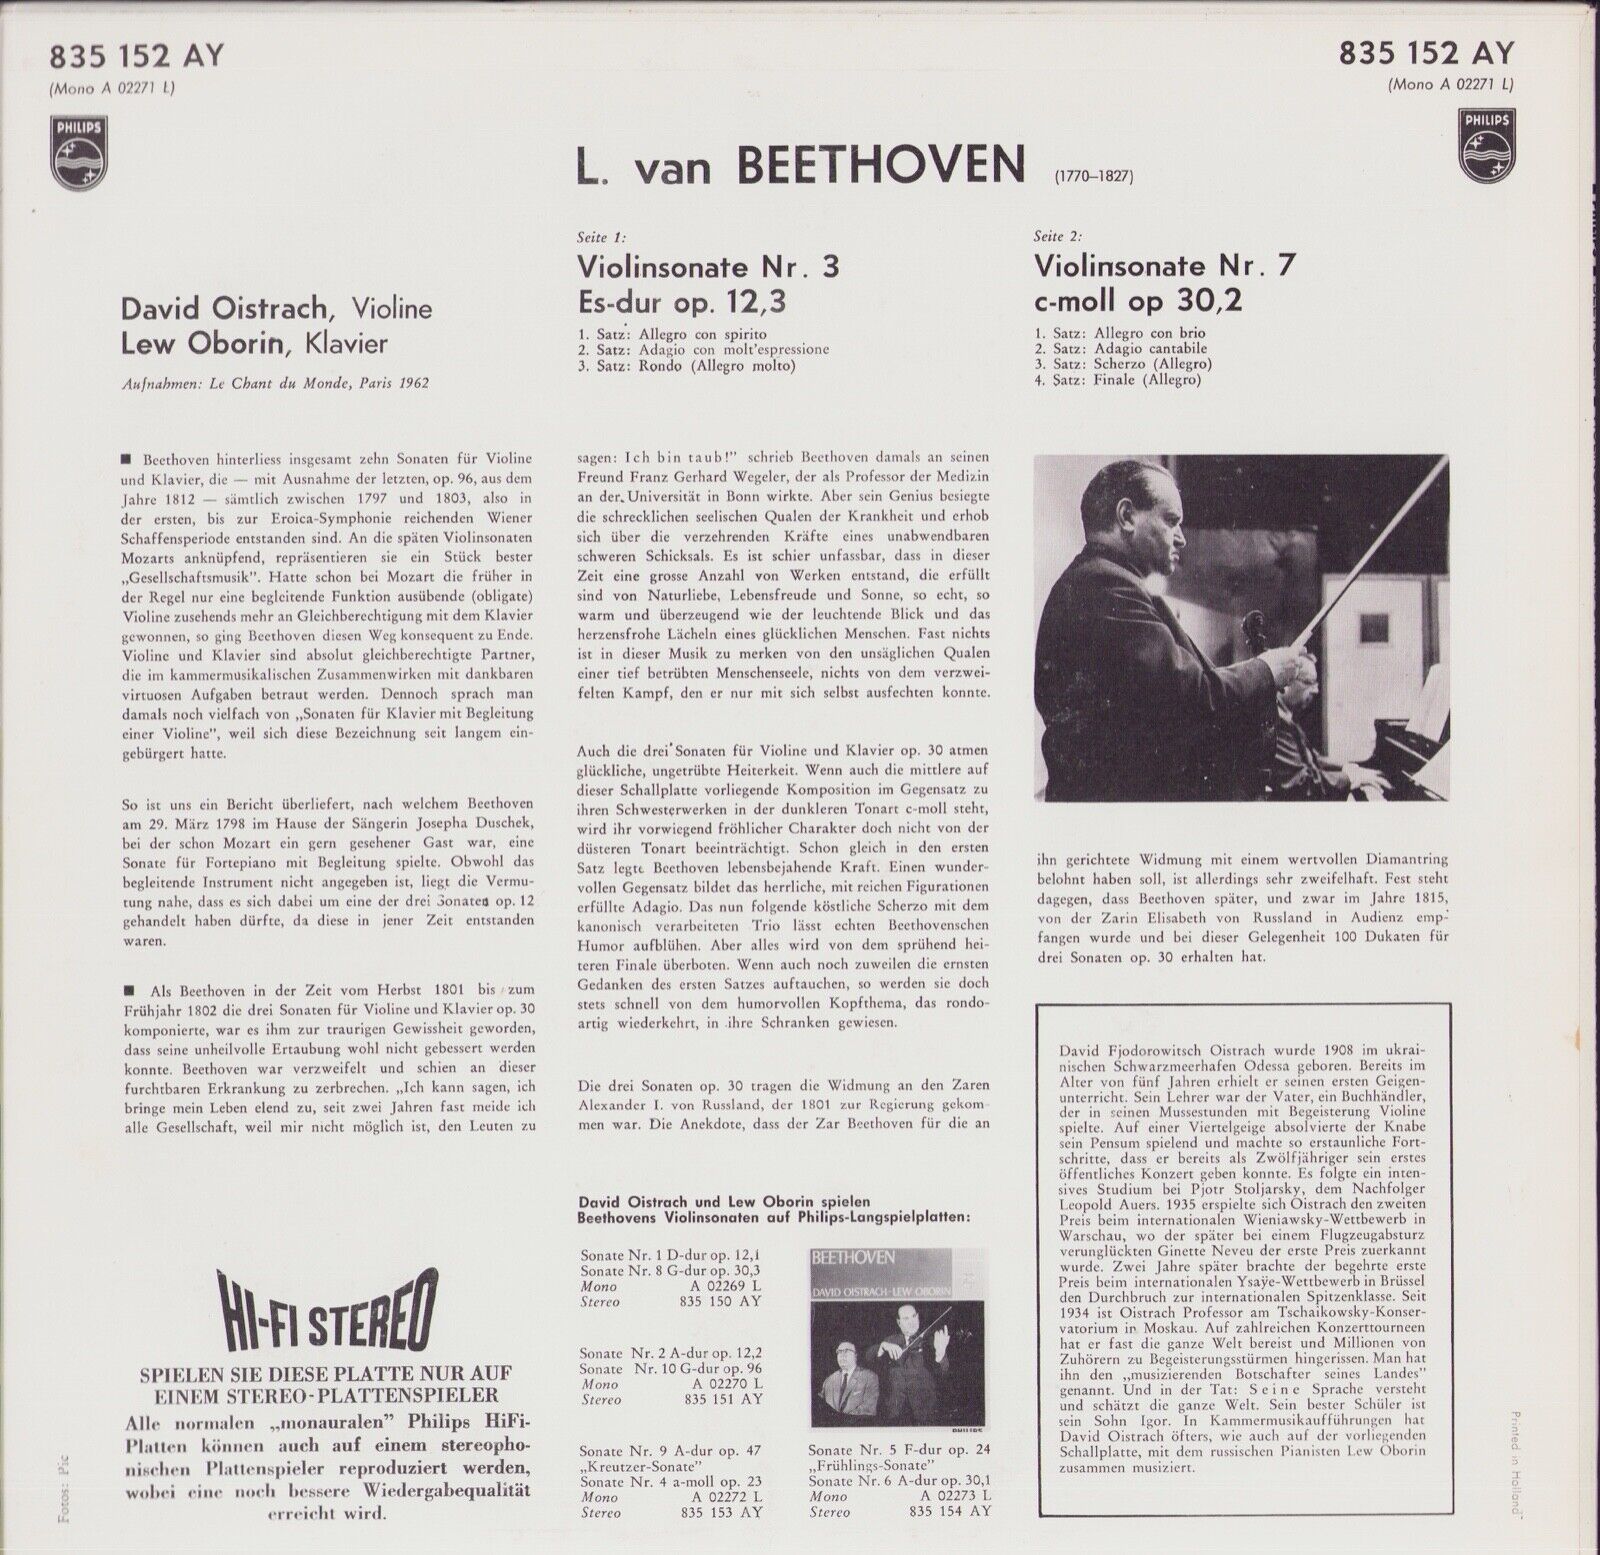 Beethoven - David Oistrach, Lev Oborin ‎- Violinsonaten III No. 3 Op. 12 No. 3 - No. 7 Op. 30 No. 2 Vinyl LP